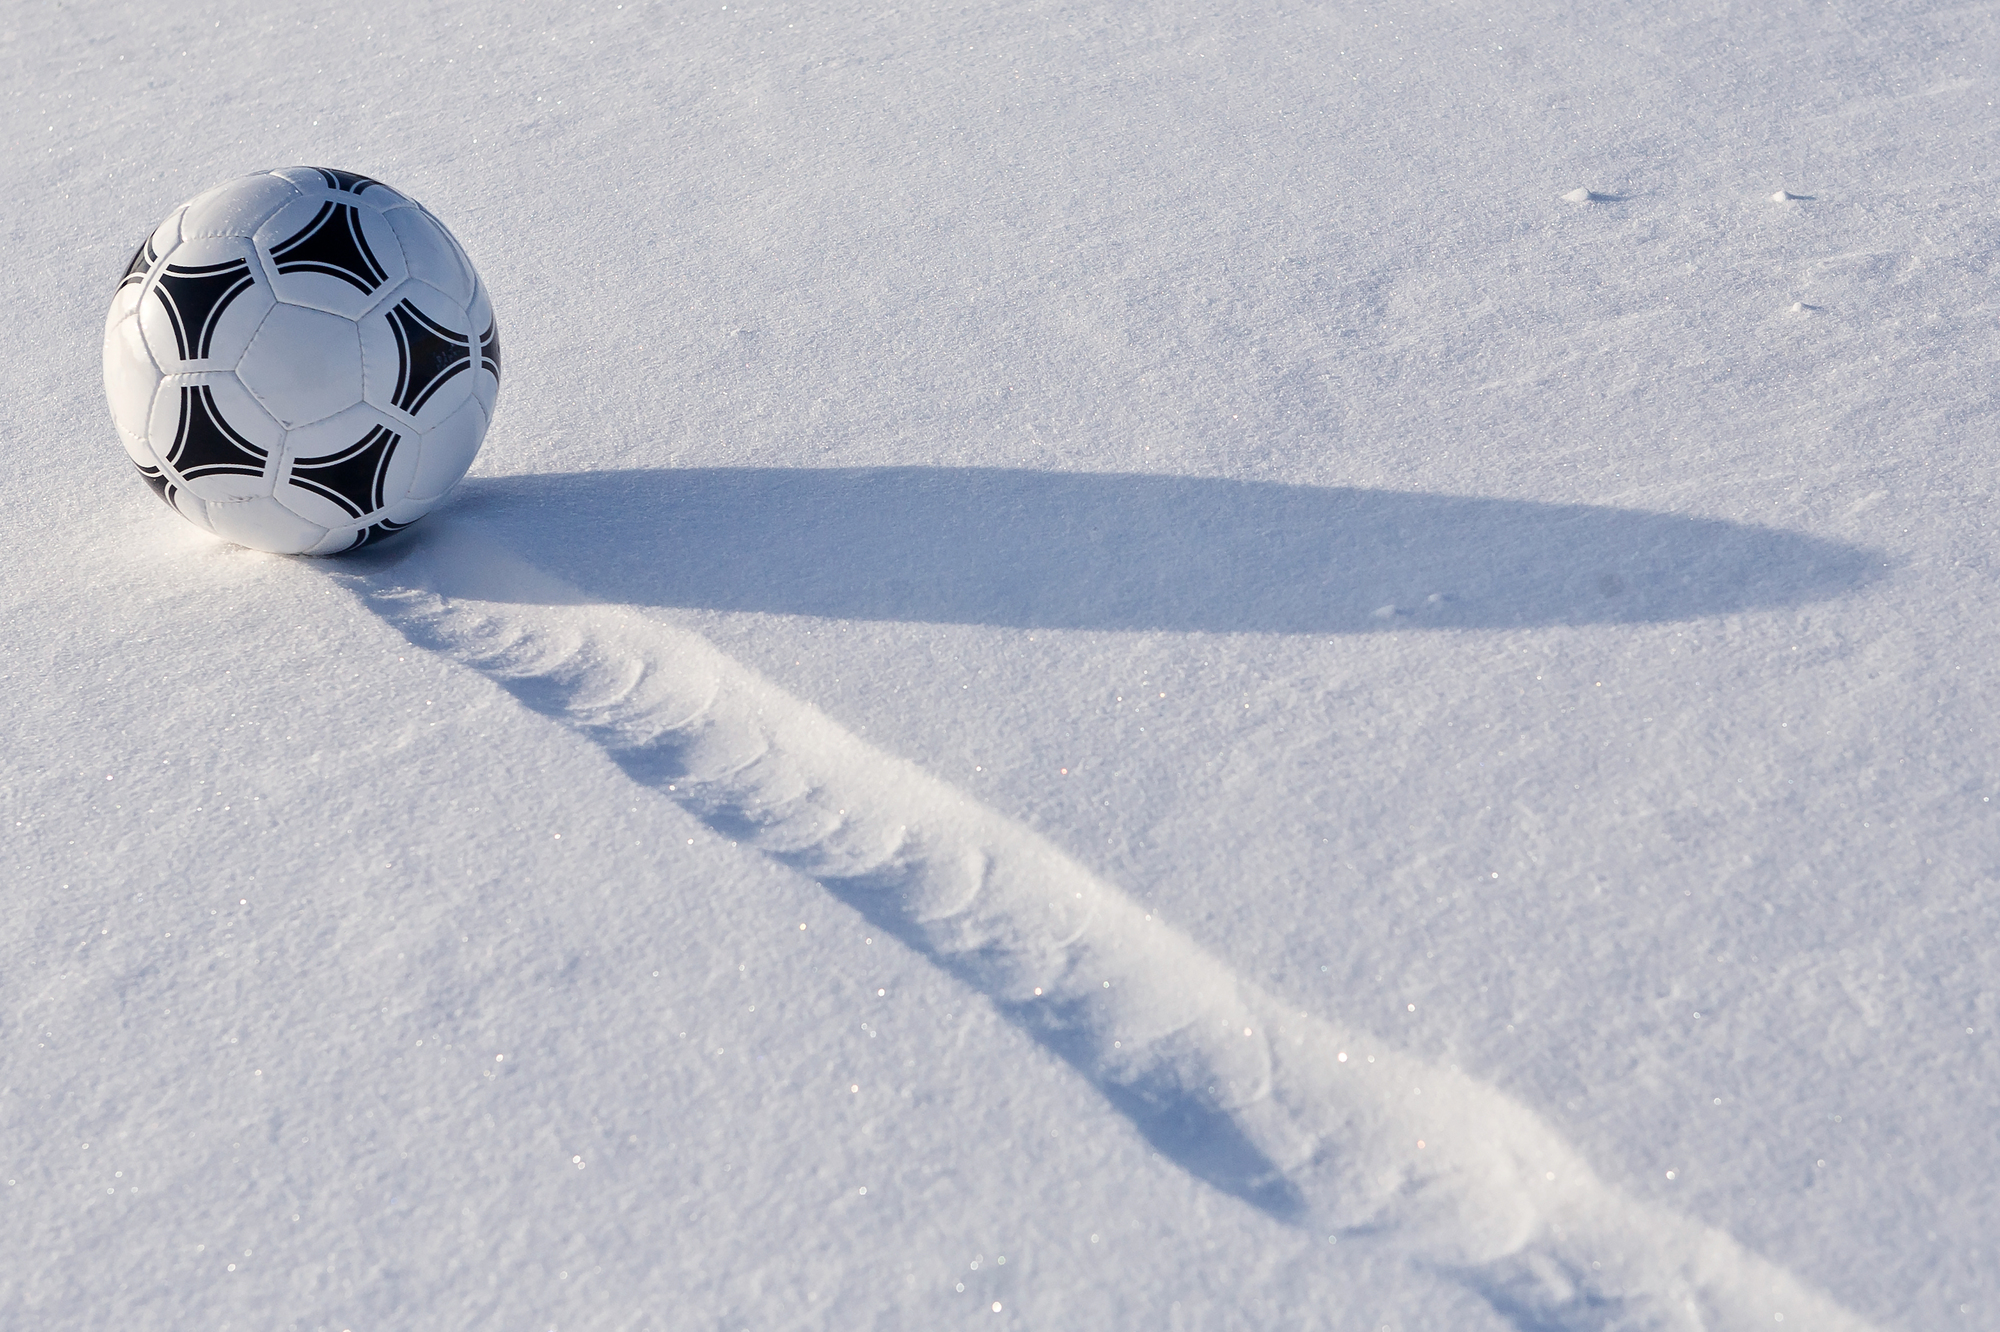 冬の防寒にかかせないサッカー・フットサルインナーの選び方